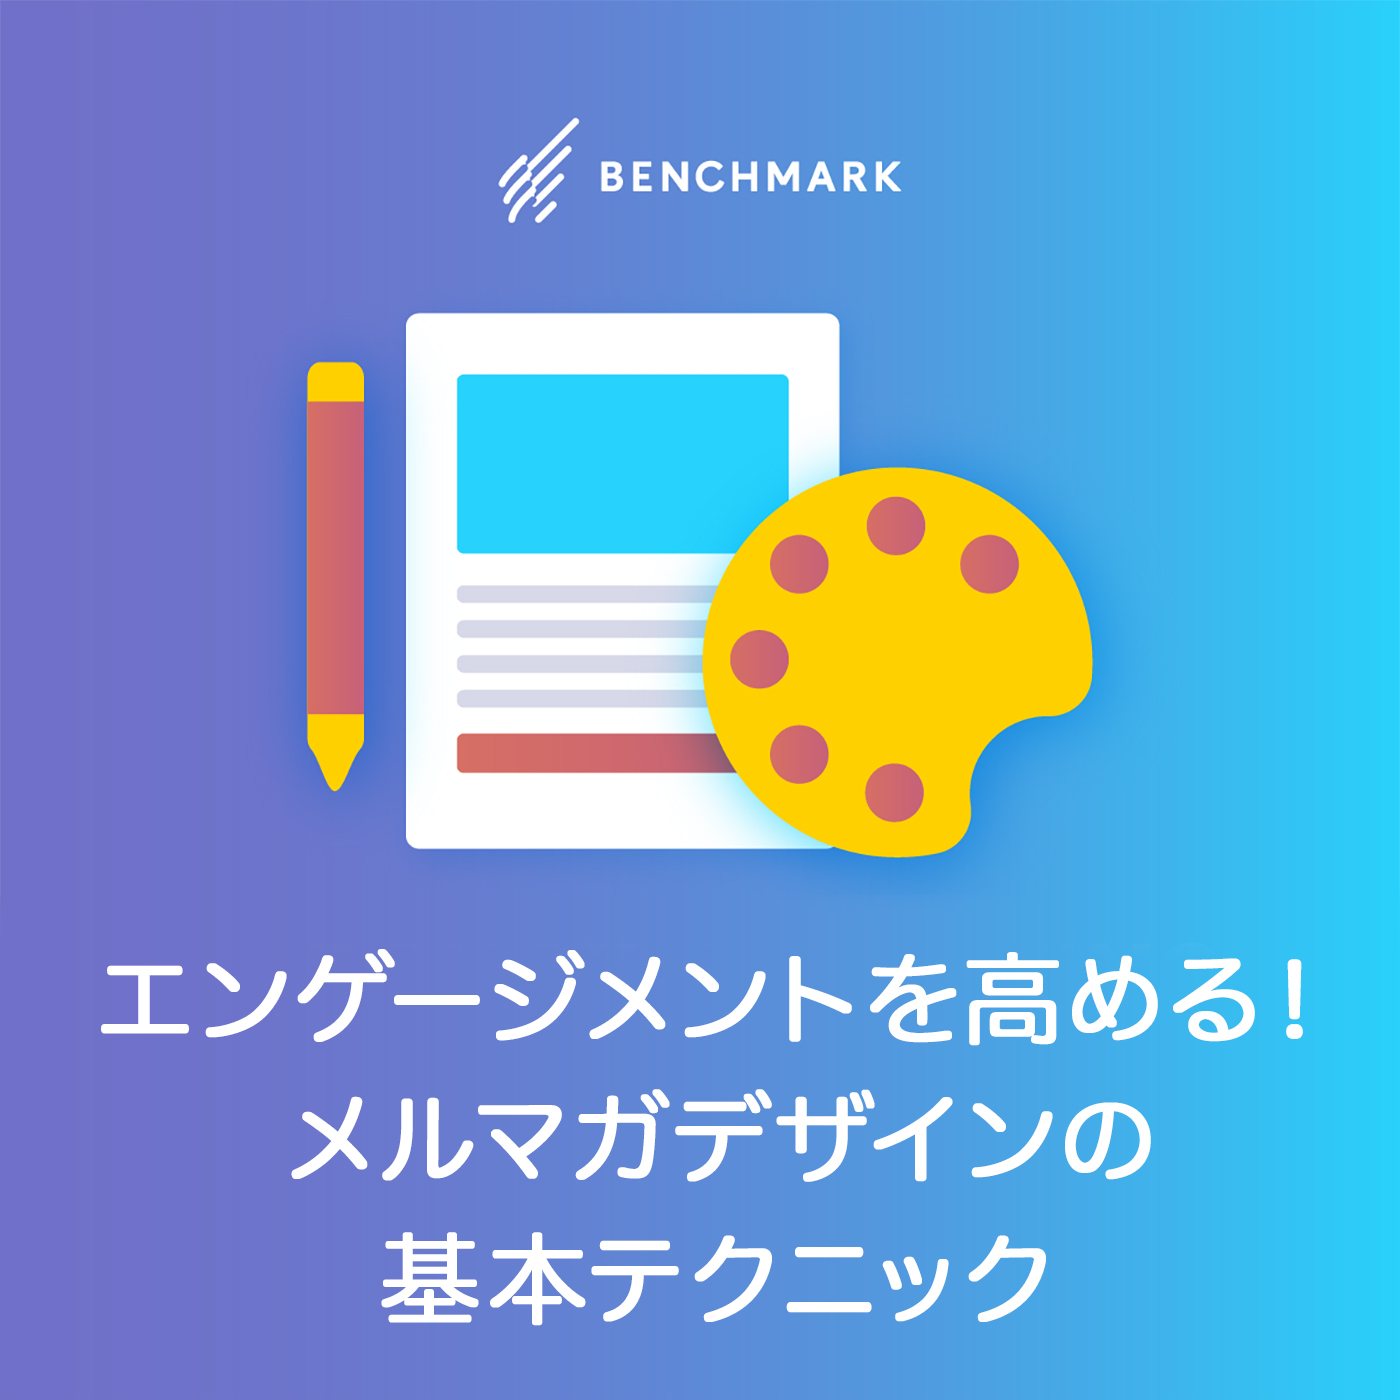 メルマガデザインの基本テクニック7選 色やフォント レイアウトの考え方とは Benchmark Email